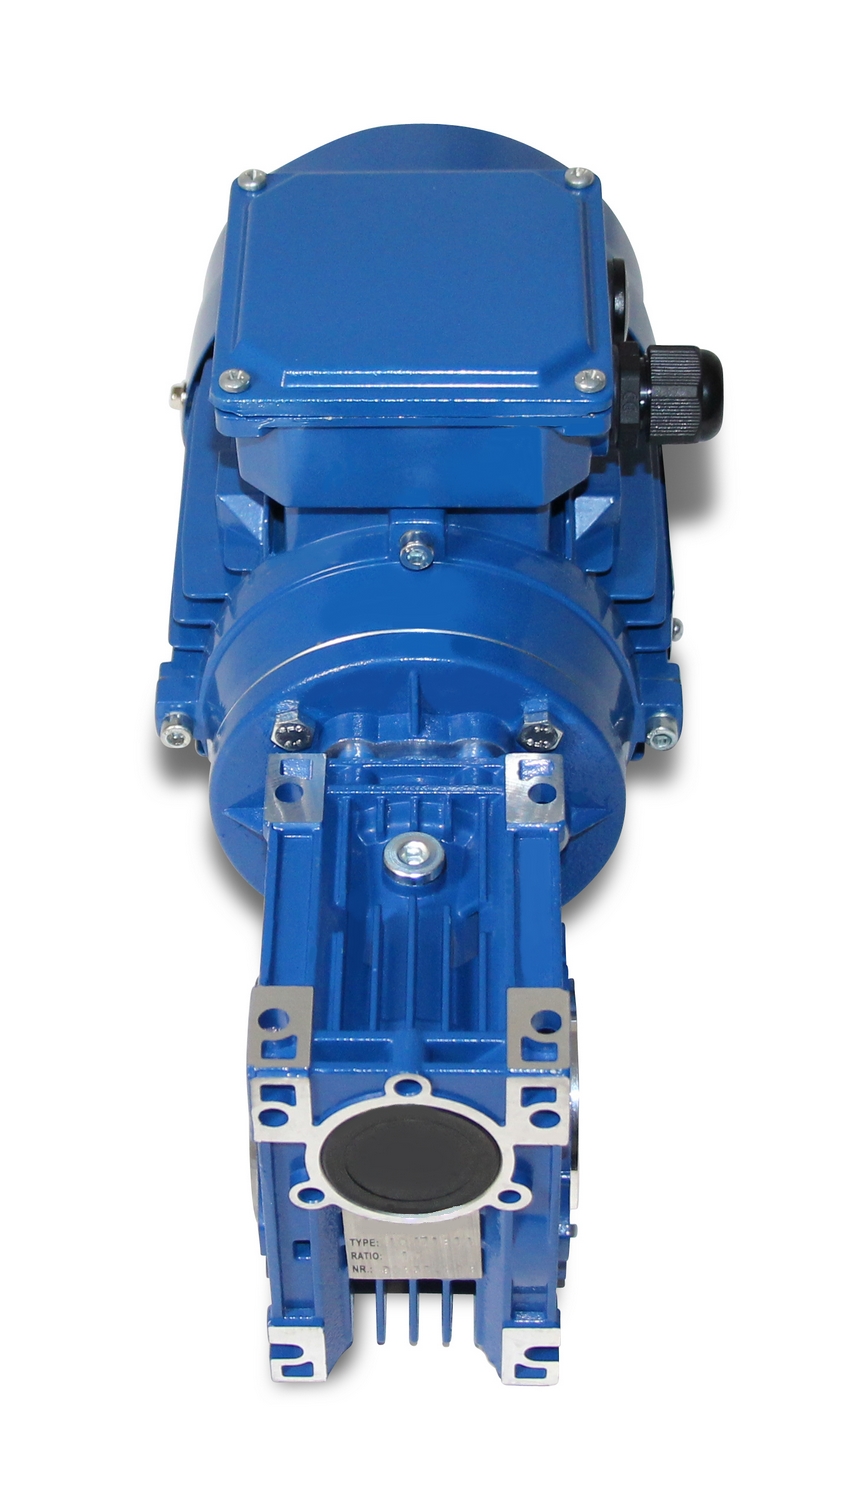 CMRV 040-712-4 - 0,37 kW - 70 Upm-Schneckengetriebemotor